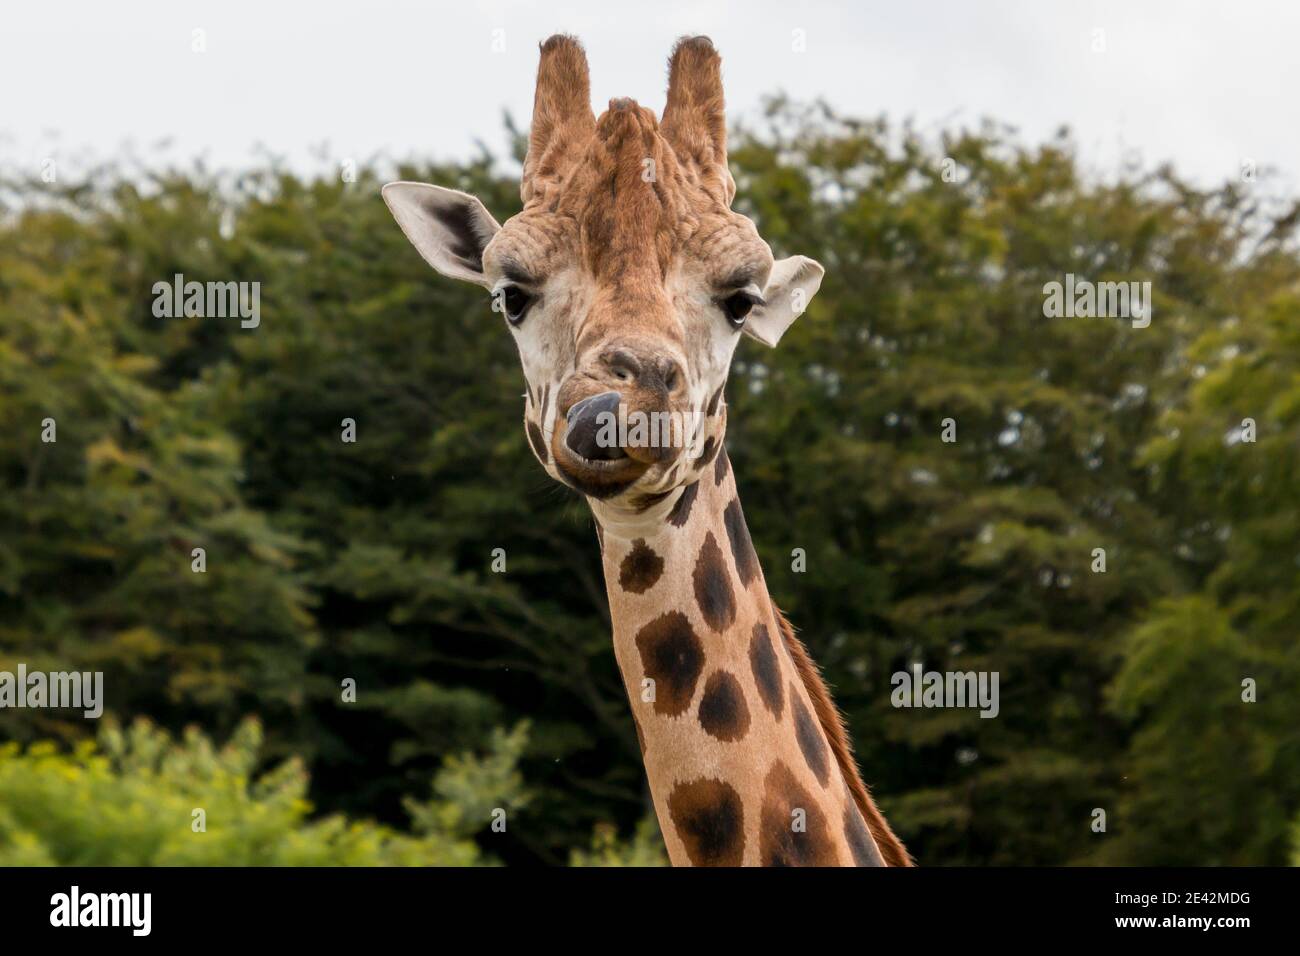 Primo piano foto di una giraffa, alberi verdi sullo sfondo, sole splendente, lingua giraffa visibile. Foto Stock